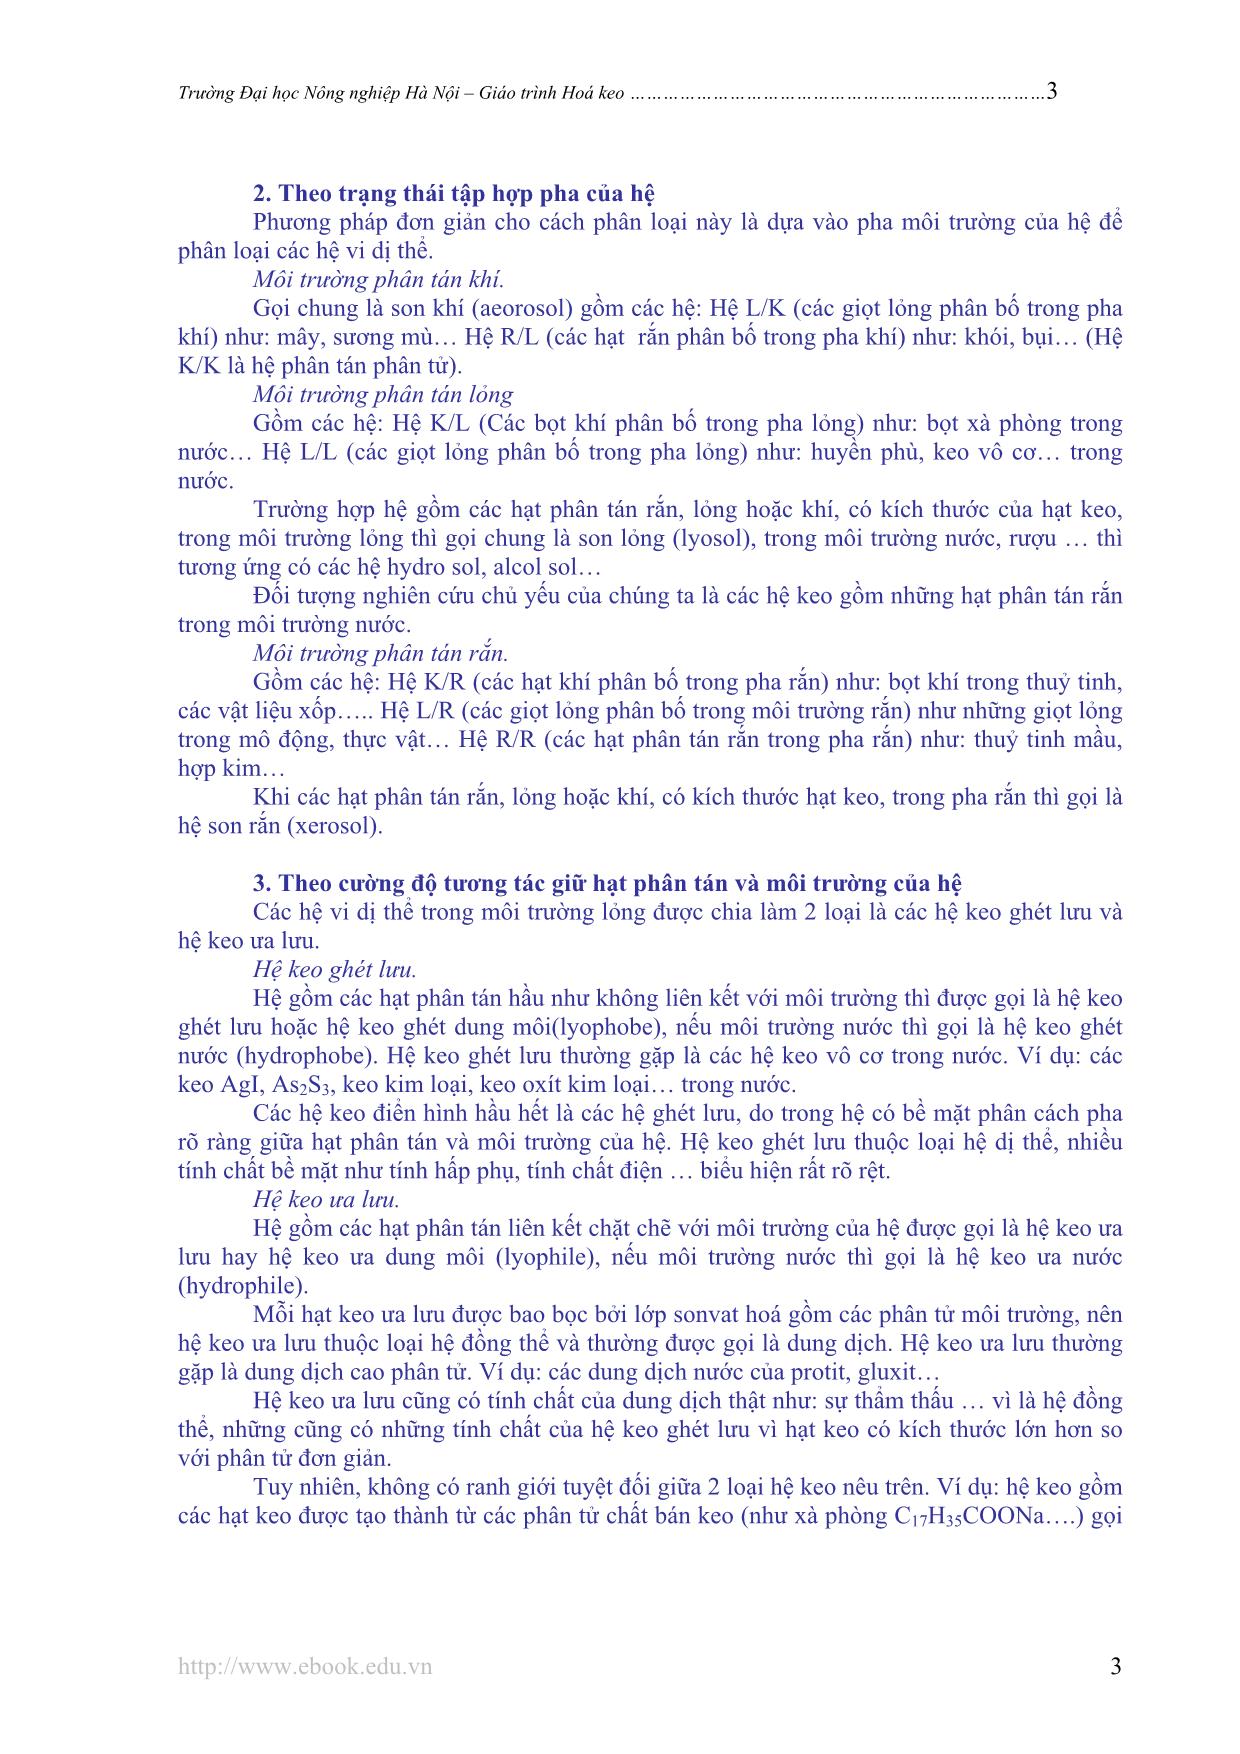 Giáo trình Hóa keo trang 4